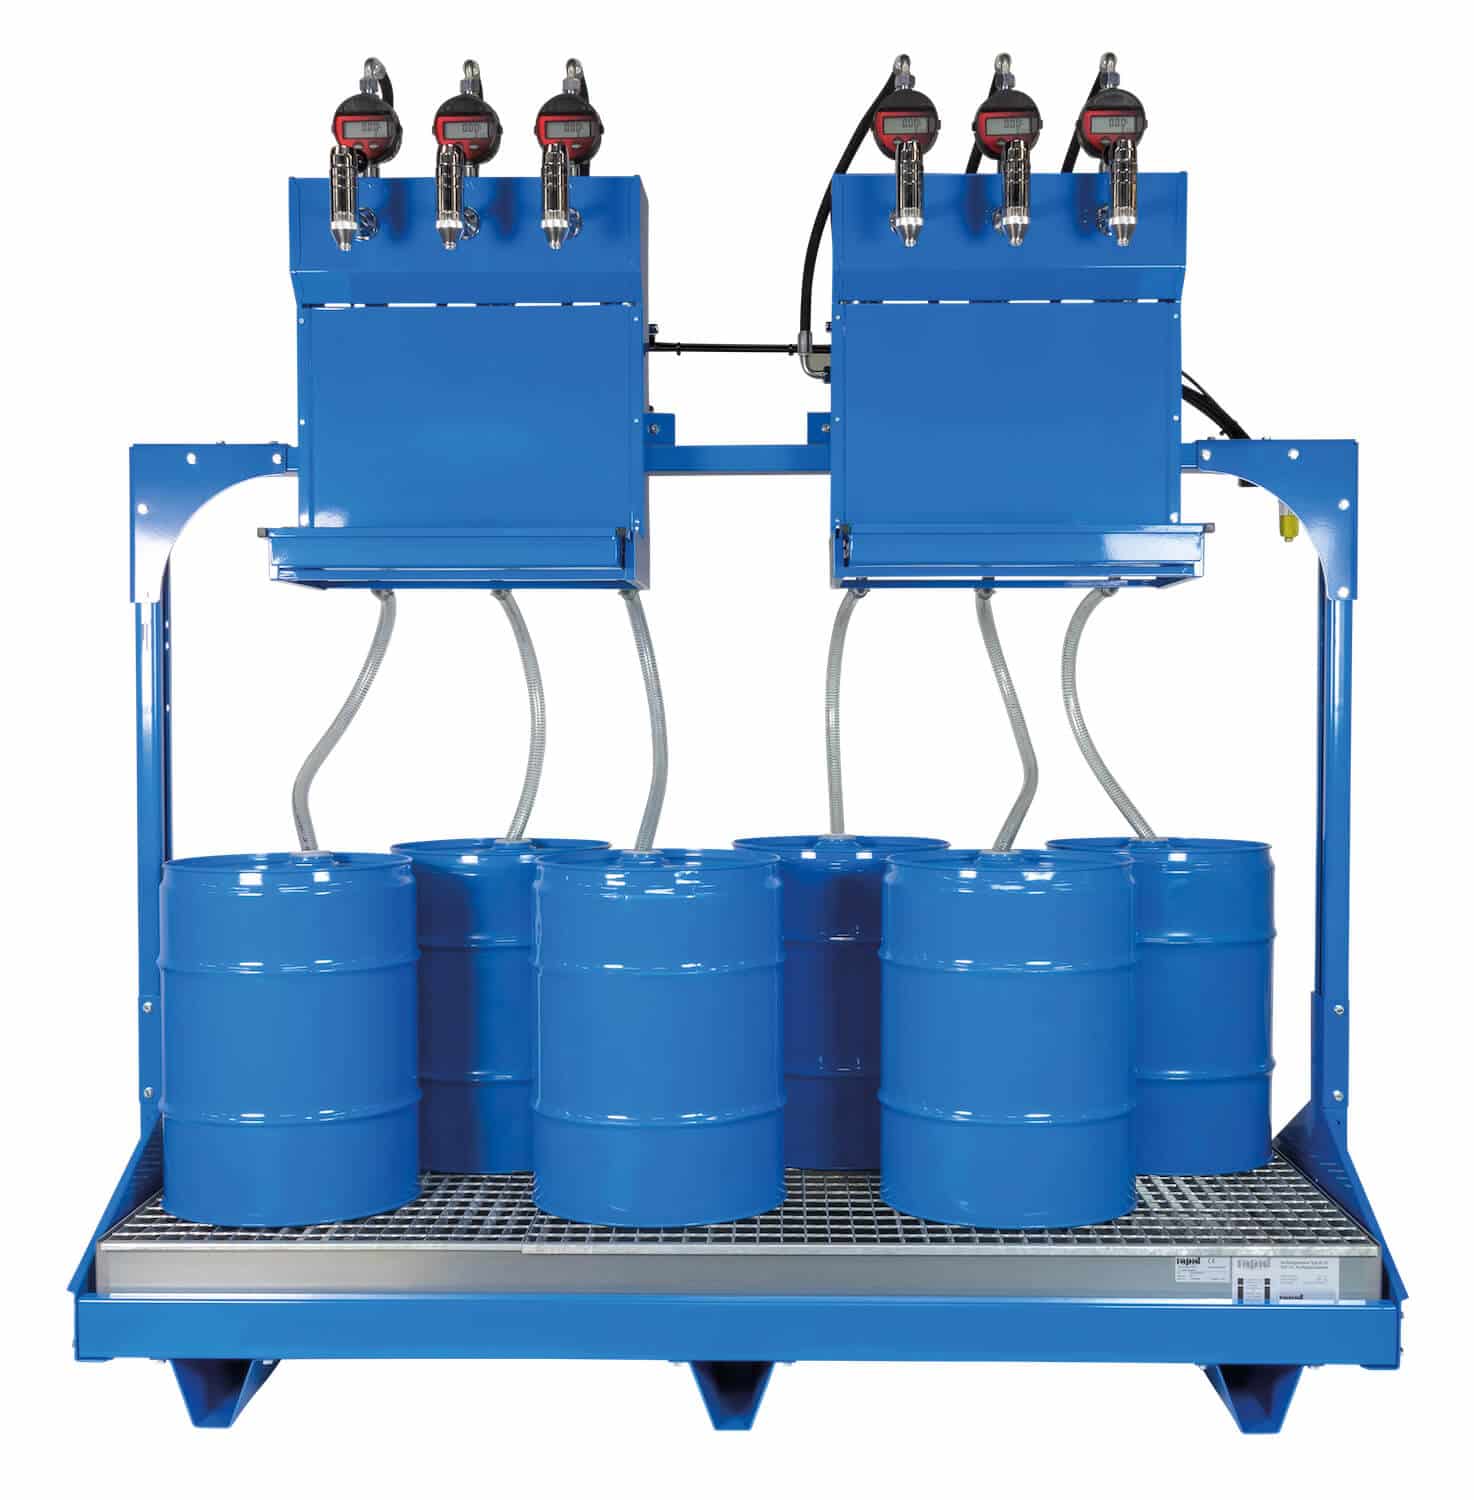 Universell einsetzbares Ölabgabeset für 6x 60 Ltr.-Fässer, mit pneumatischen Pumpen